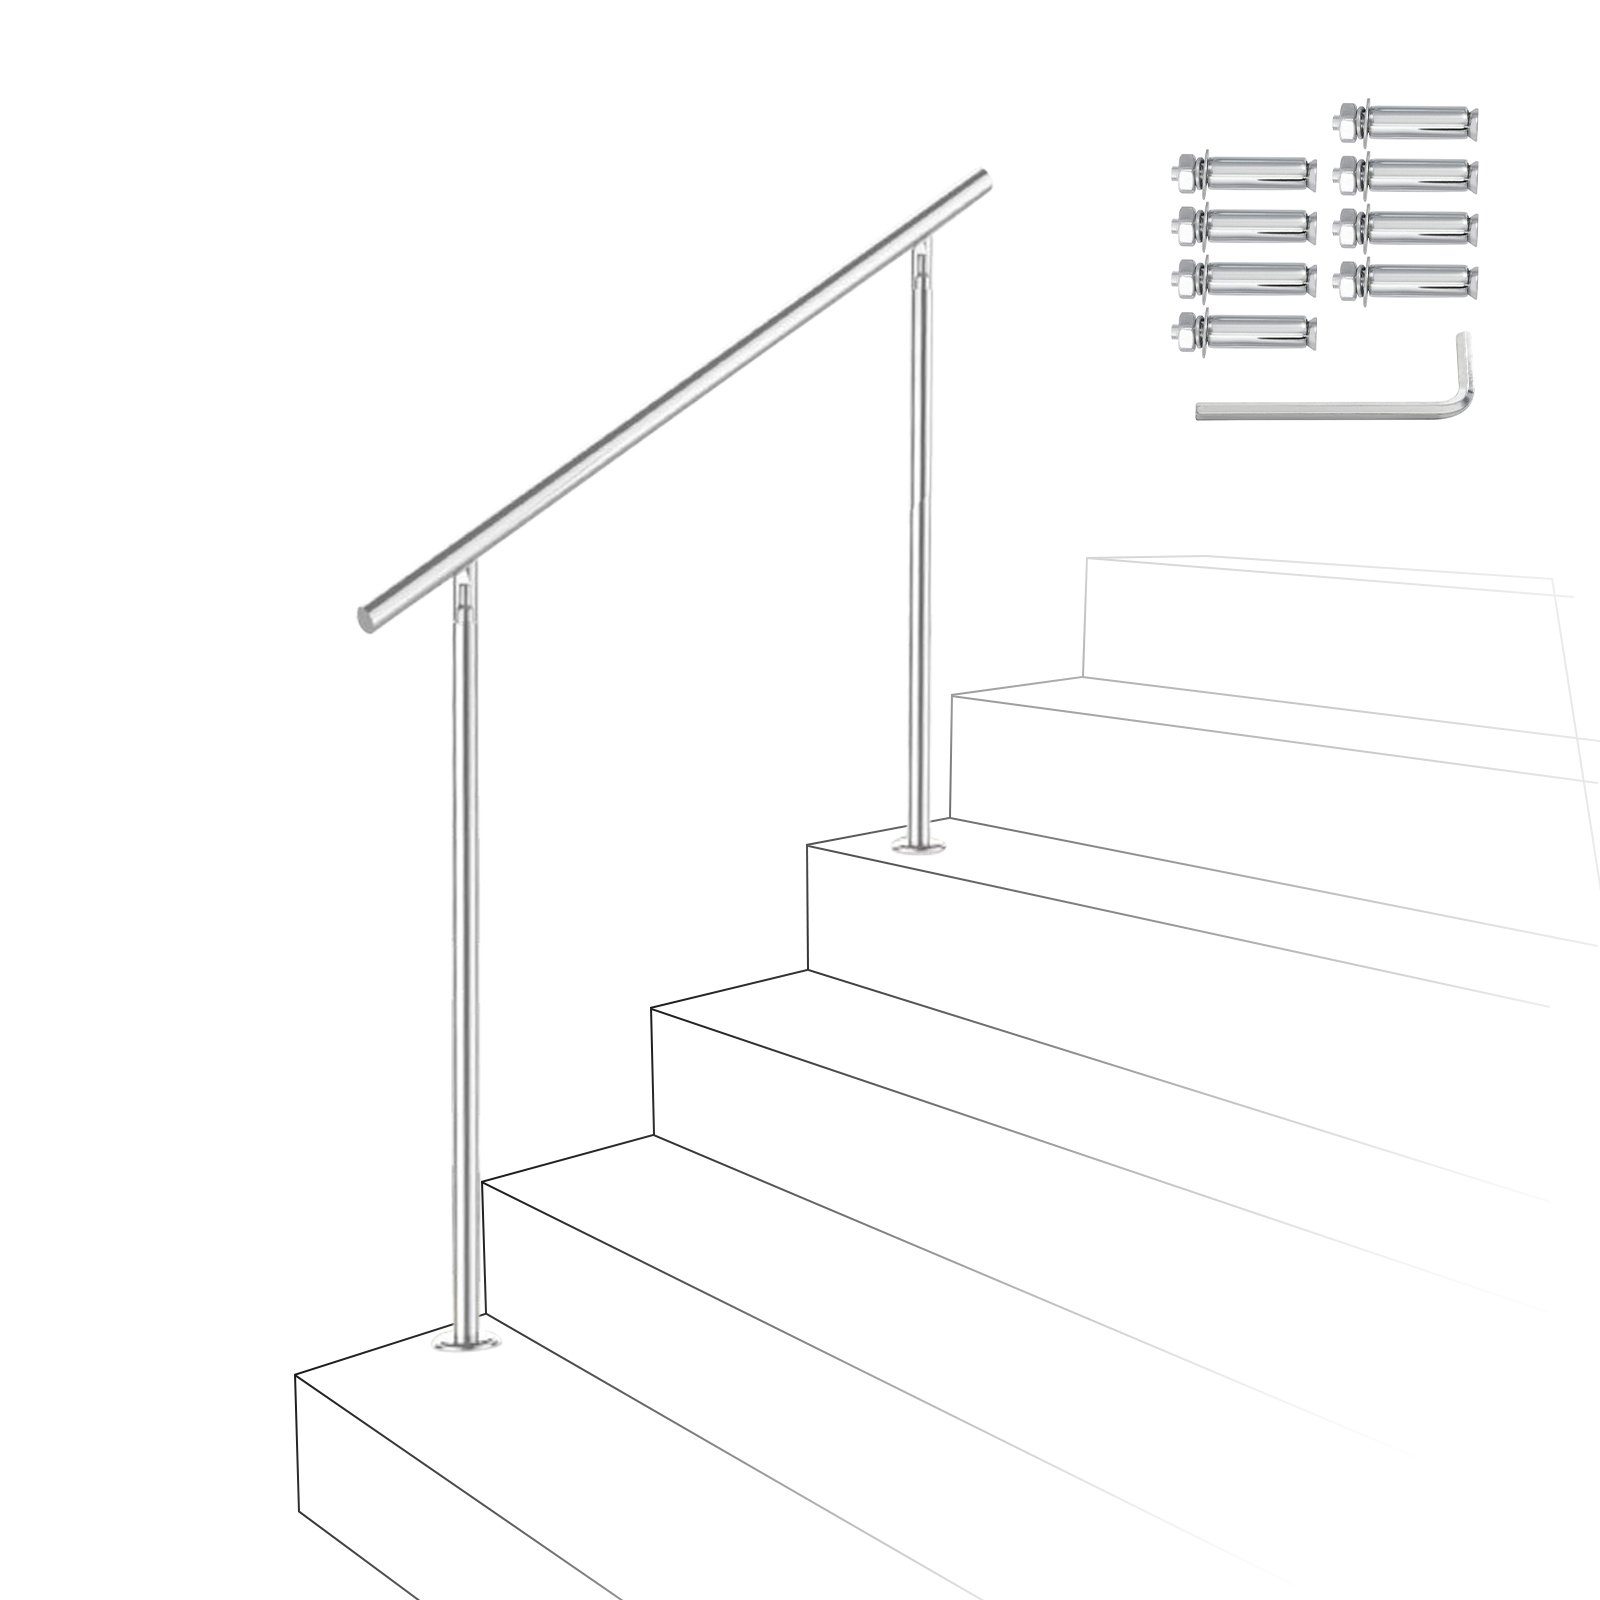 Gimisgu Treppengeländer Edelstahl Handlauf 80-180cm Geländer 0-5 Querstab Bausatz Aufmontage, 80 cm Länge, mit 0 Pfosten, für Brüstung Balkon Garten